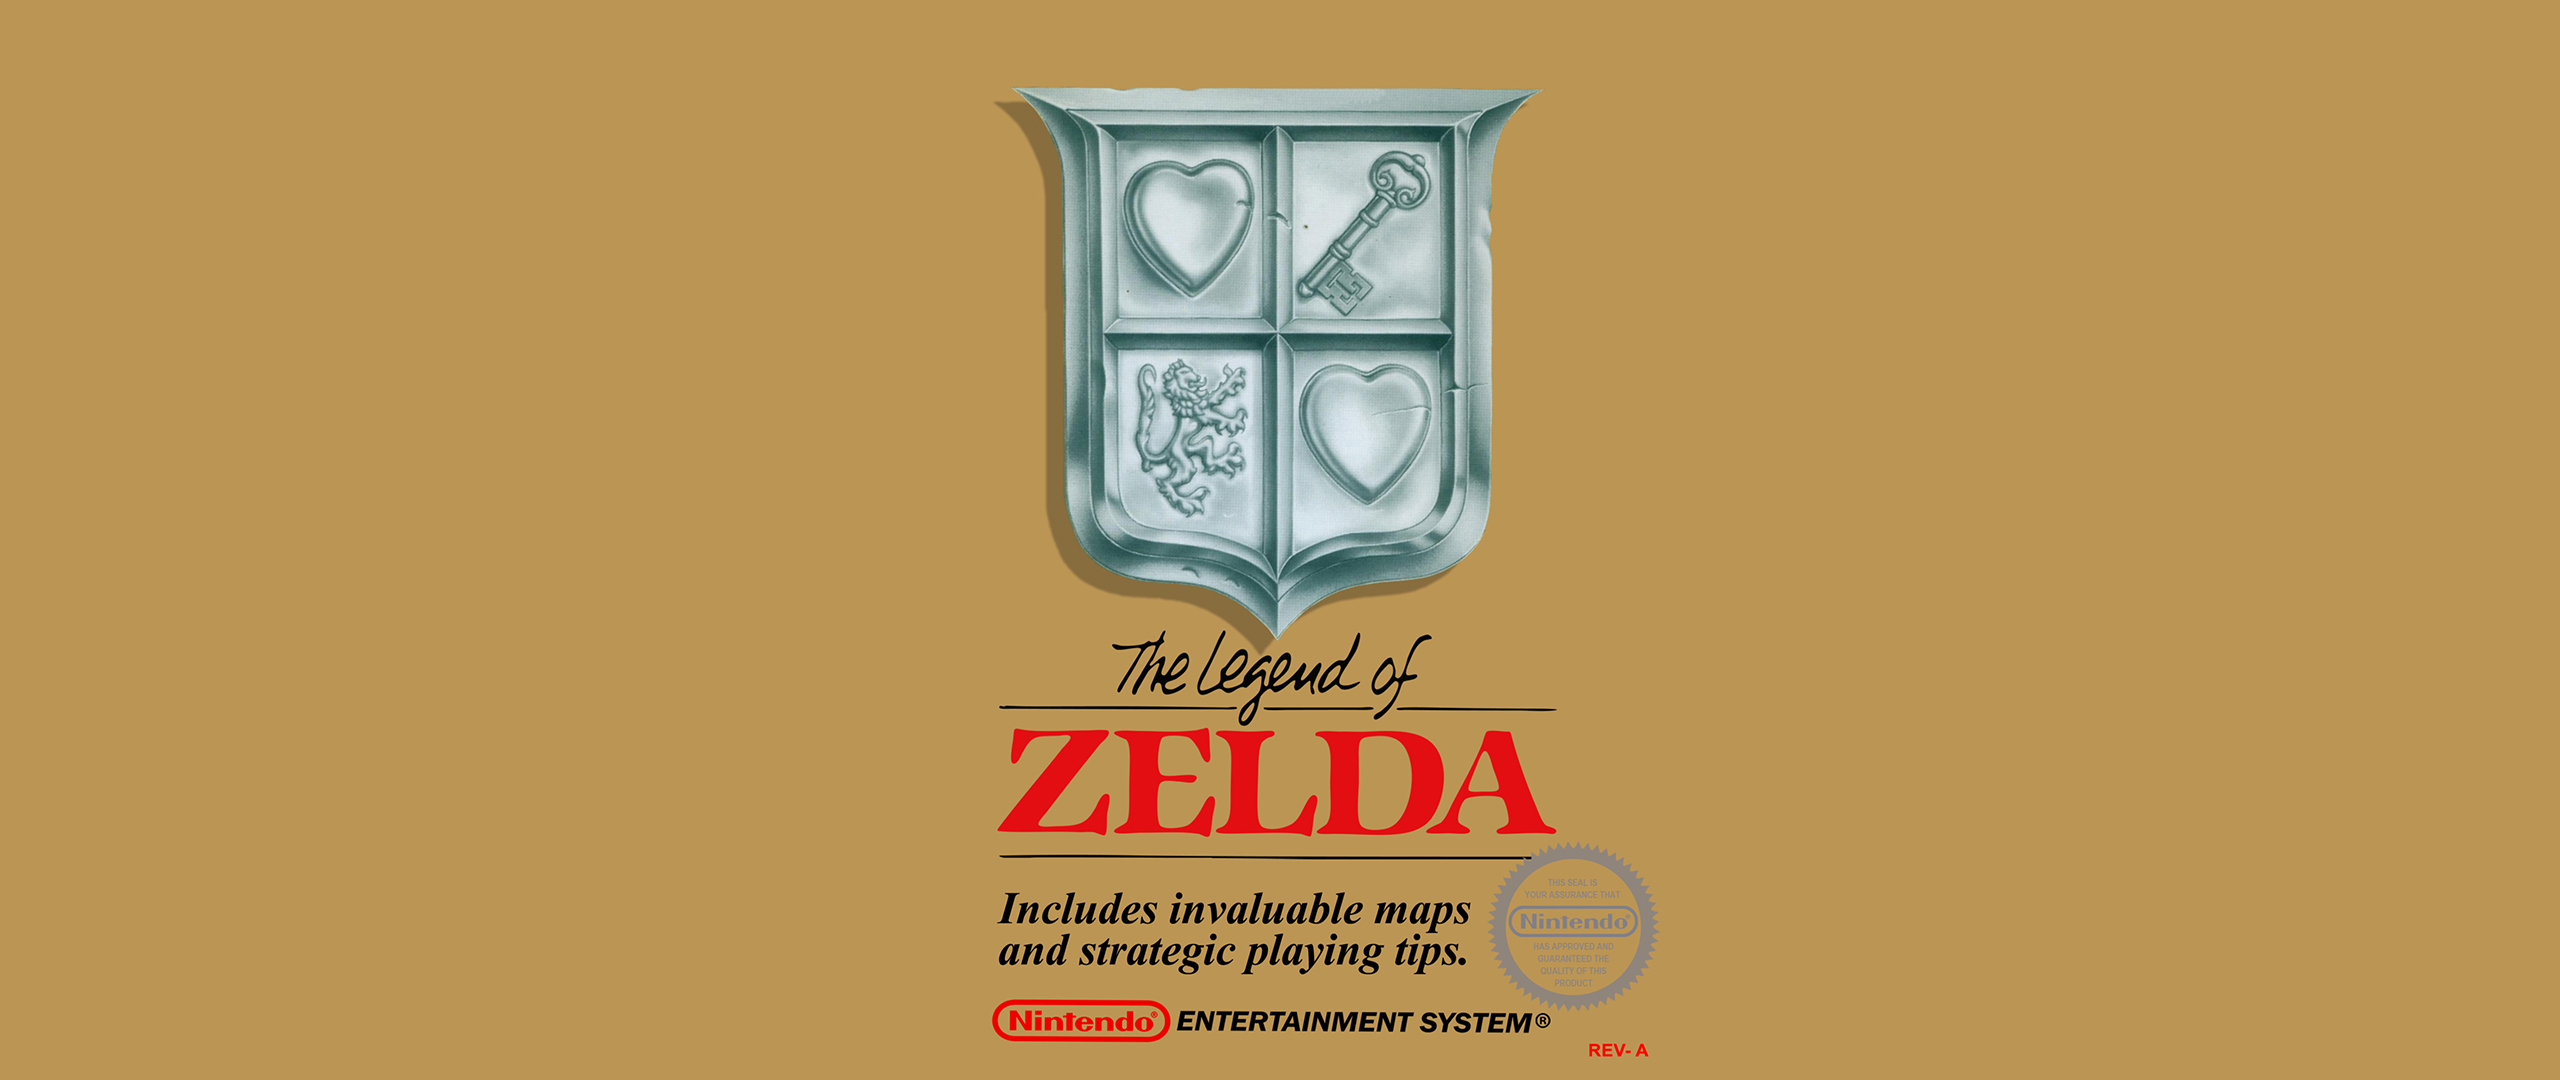 General 2560x1080 Nintendo Zelda Link video games The Legend of Zelda